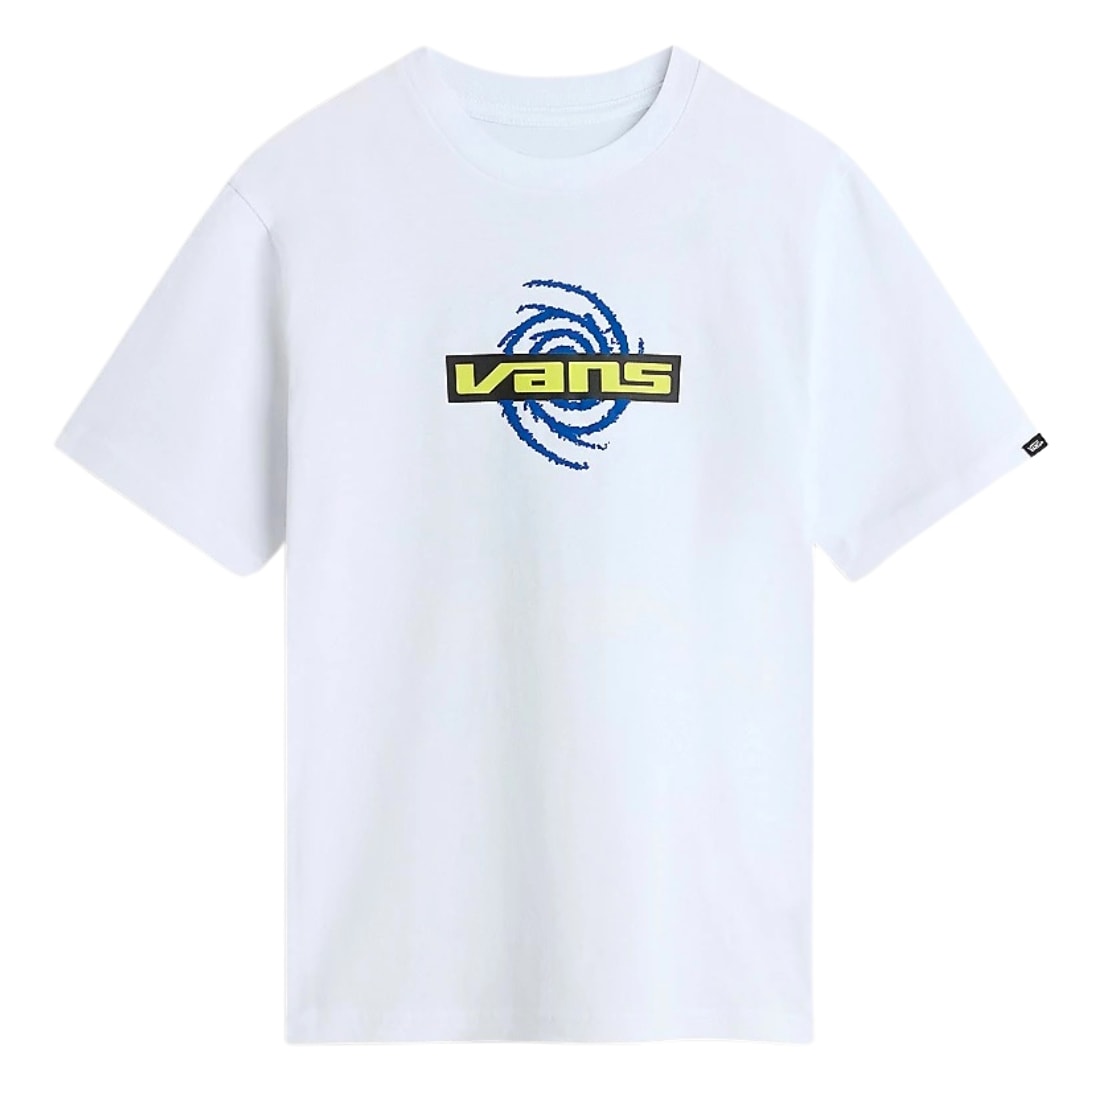 Vans Youth Galaxy Kids T-Shirt - White - Boys Skate Brand T-Shirt by Vans